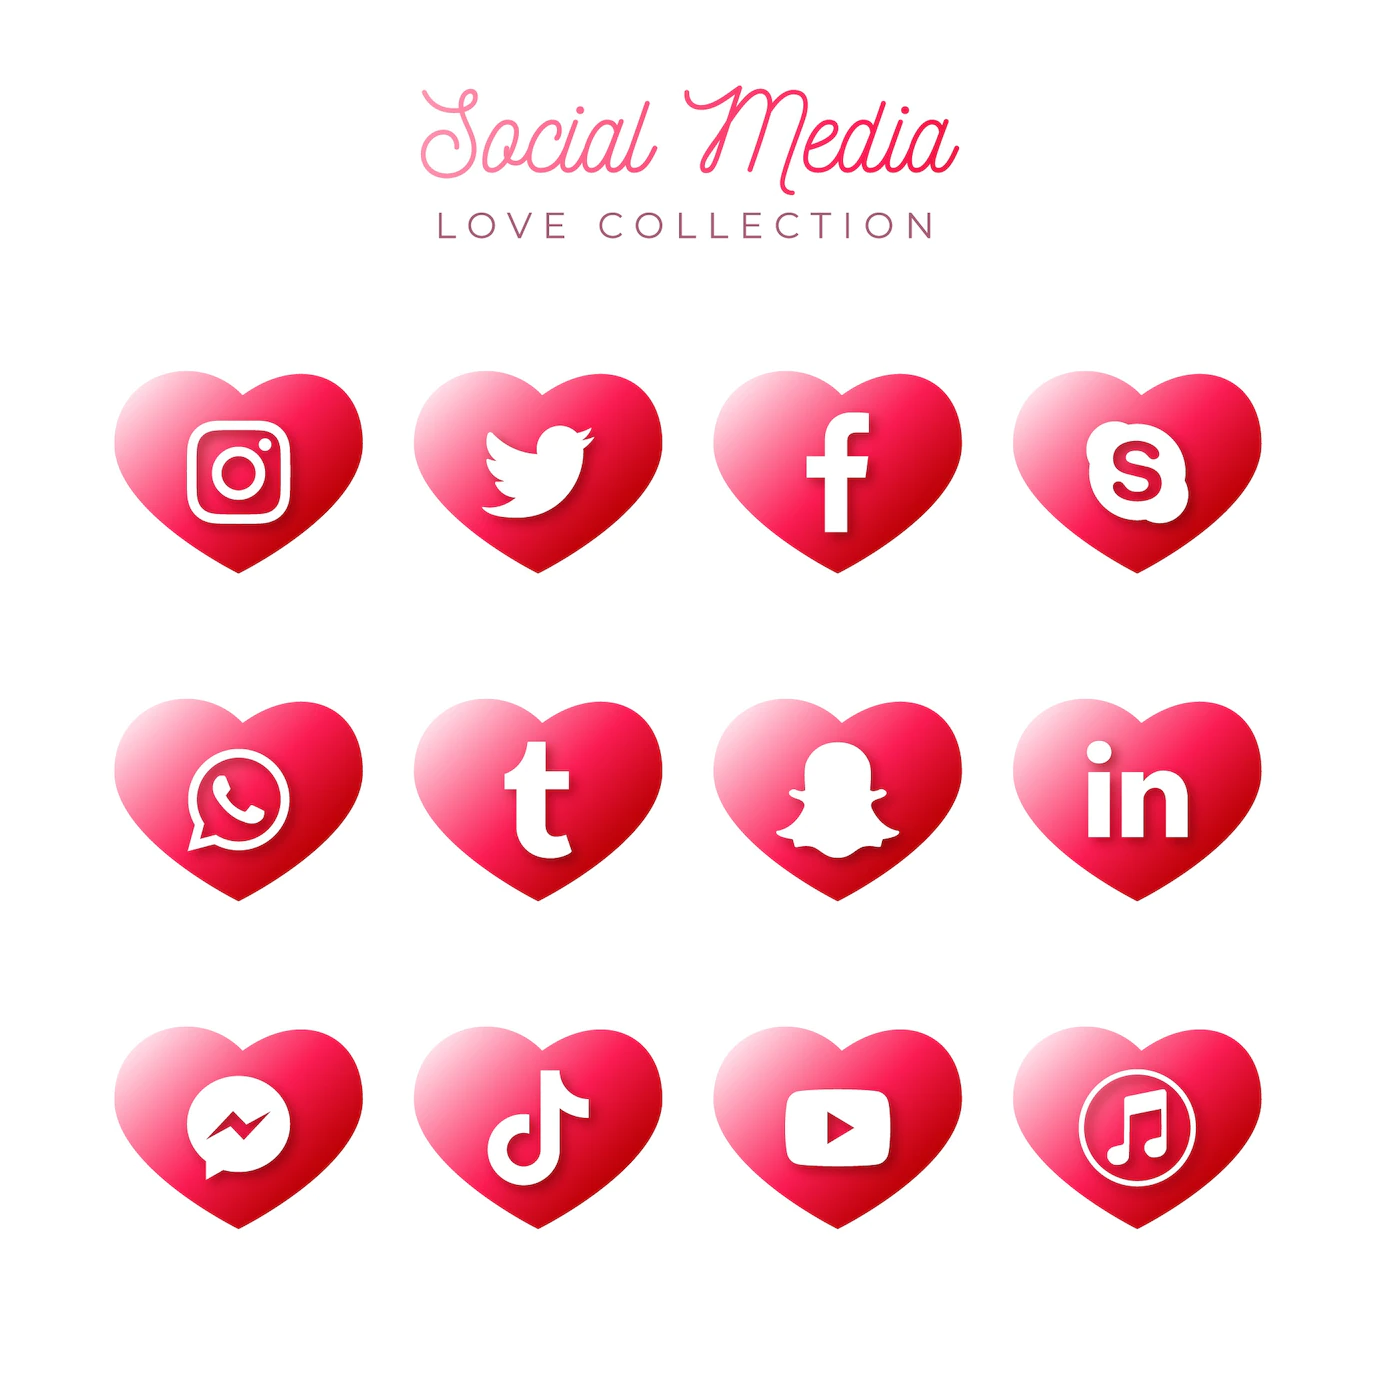 Social Media Collection 91008 51